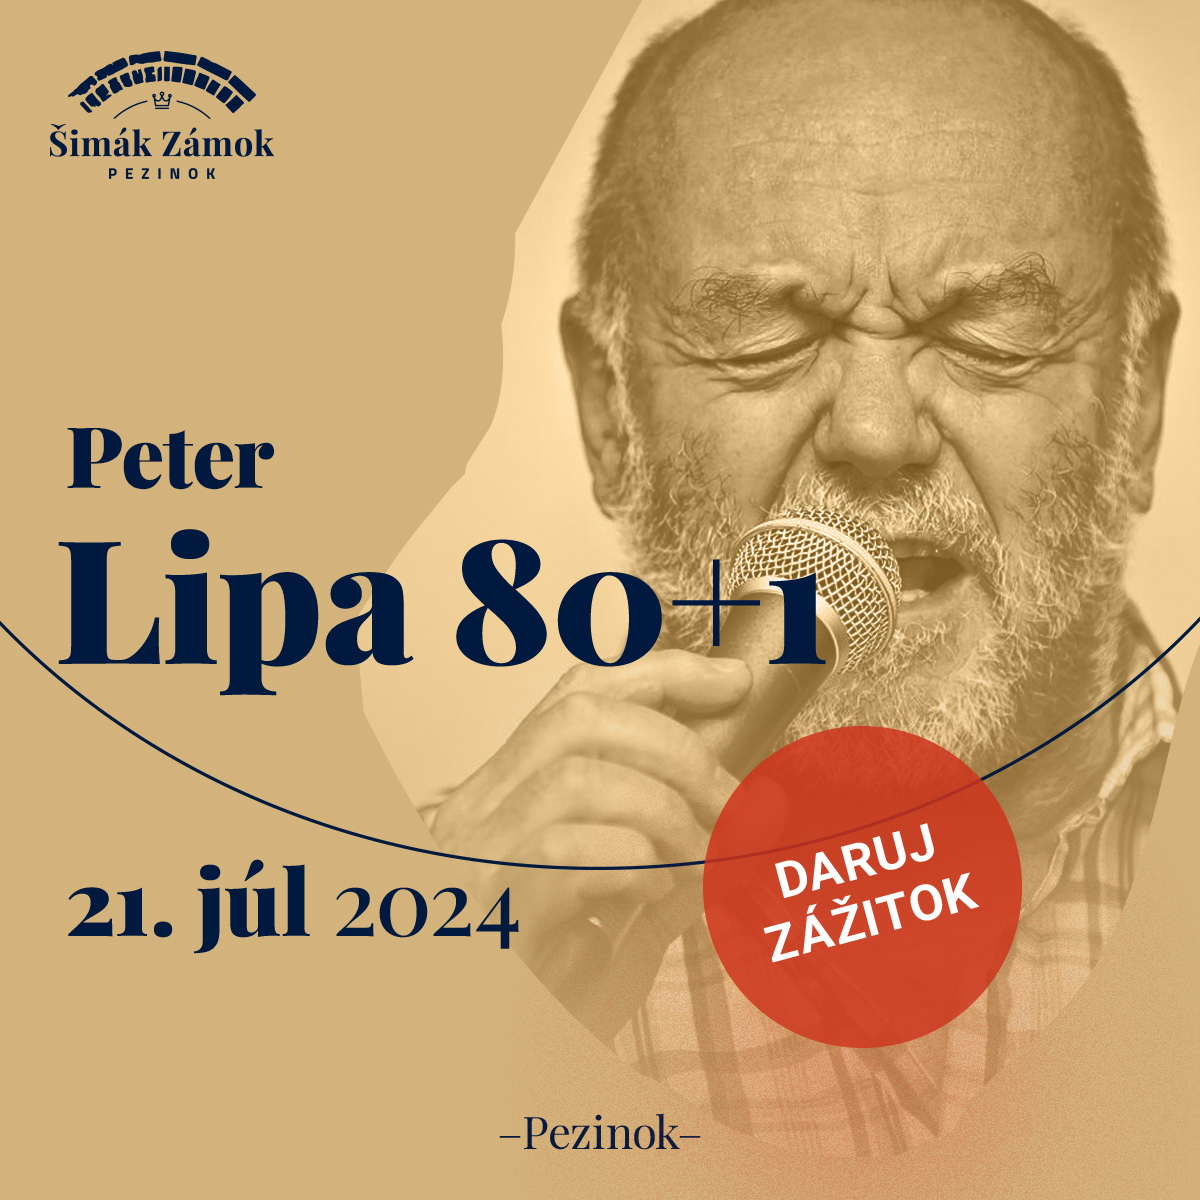 Peter Lipa na zámku 80+1 (60 rokov na scéne)